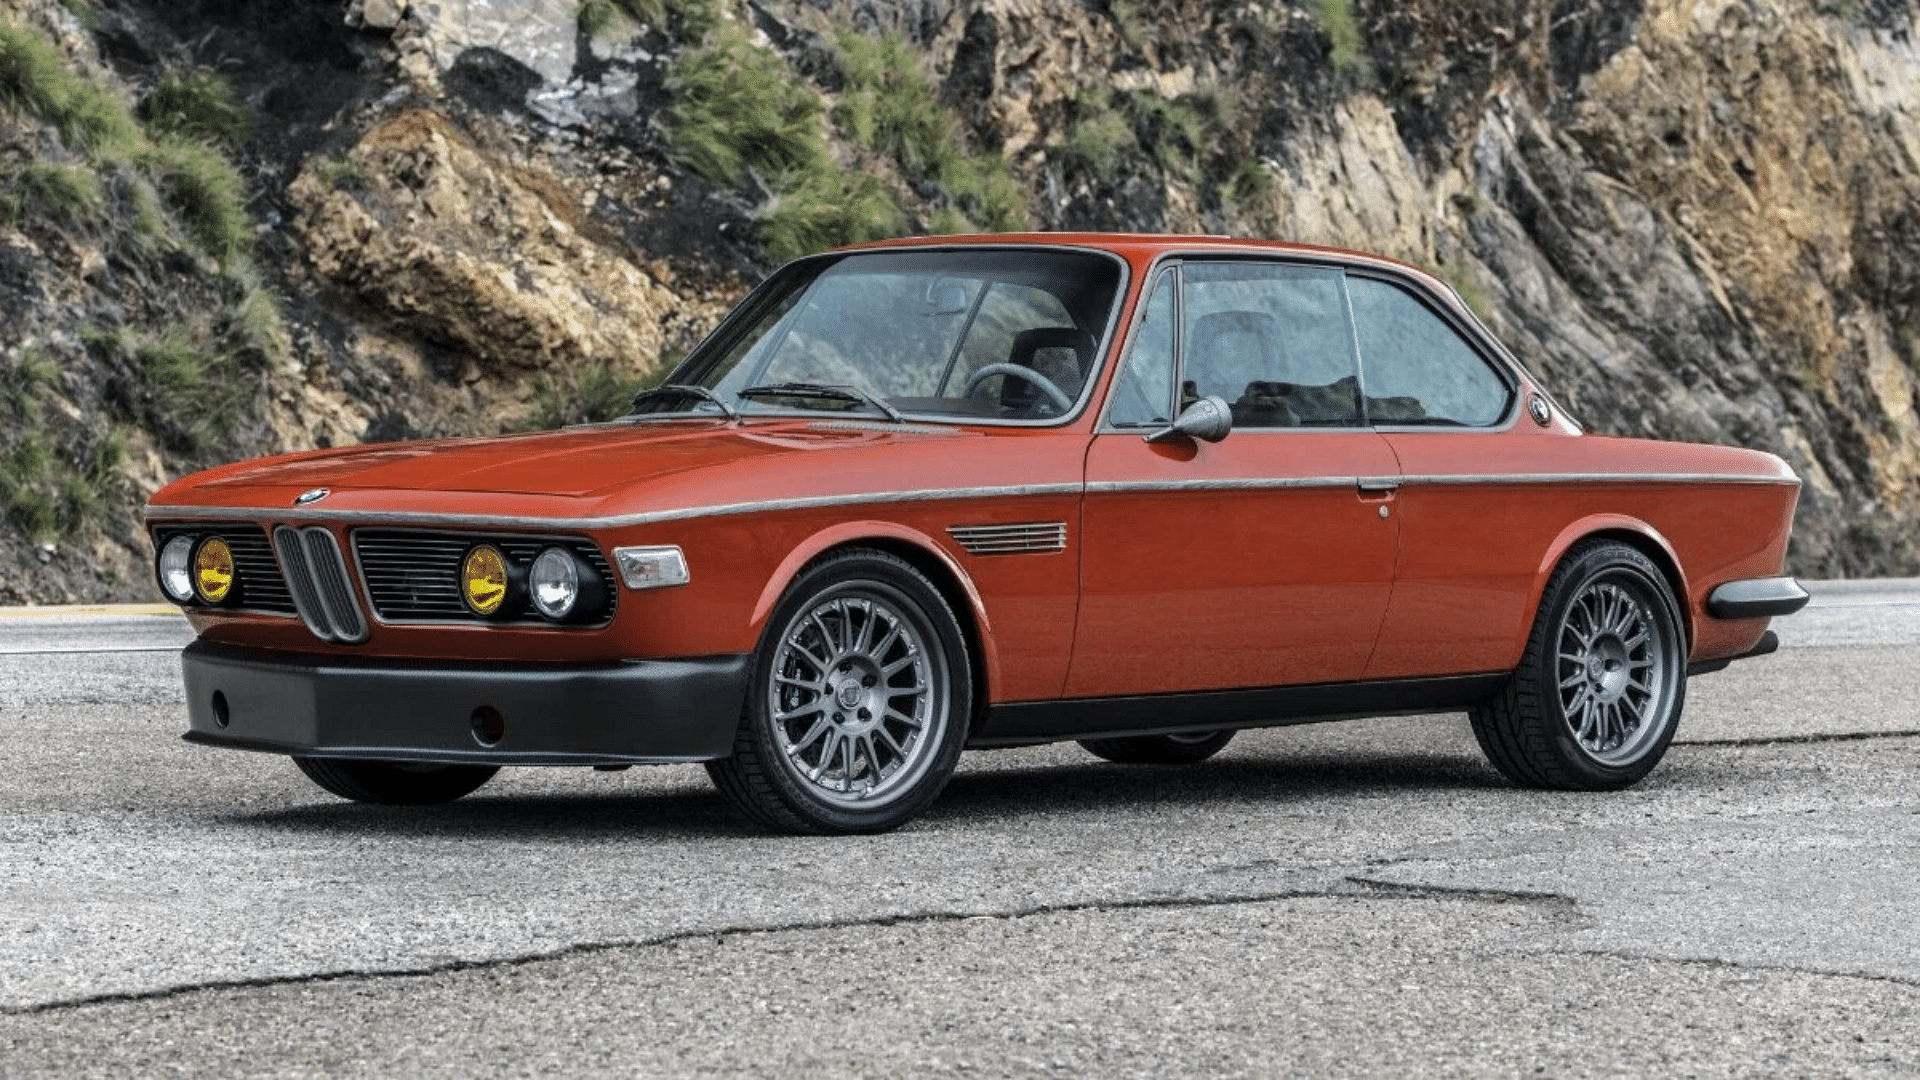 RDJ's 1974 BMW 3.0CS